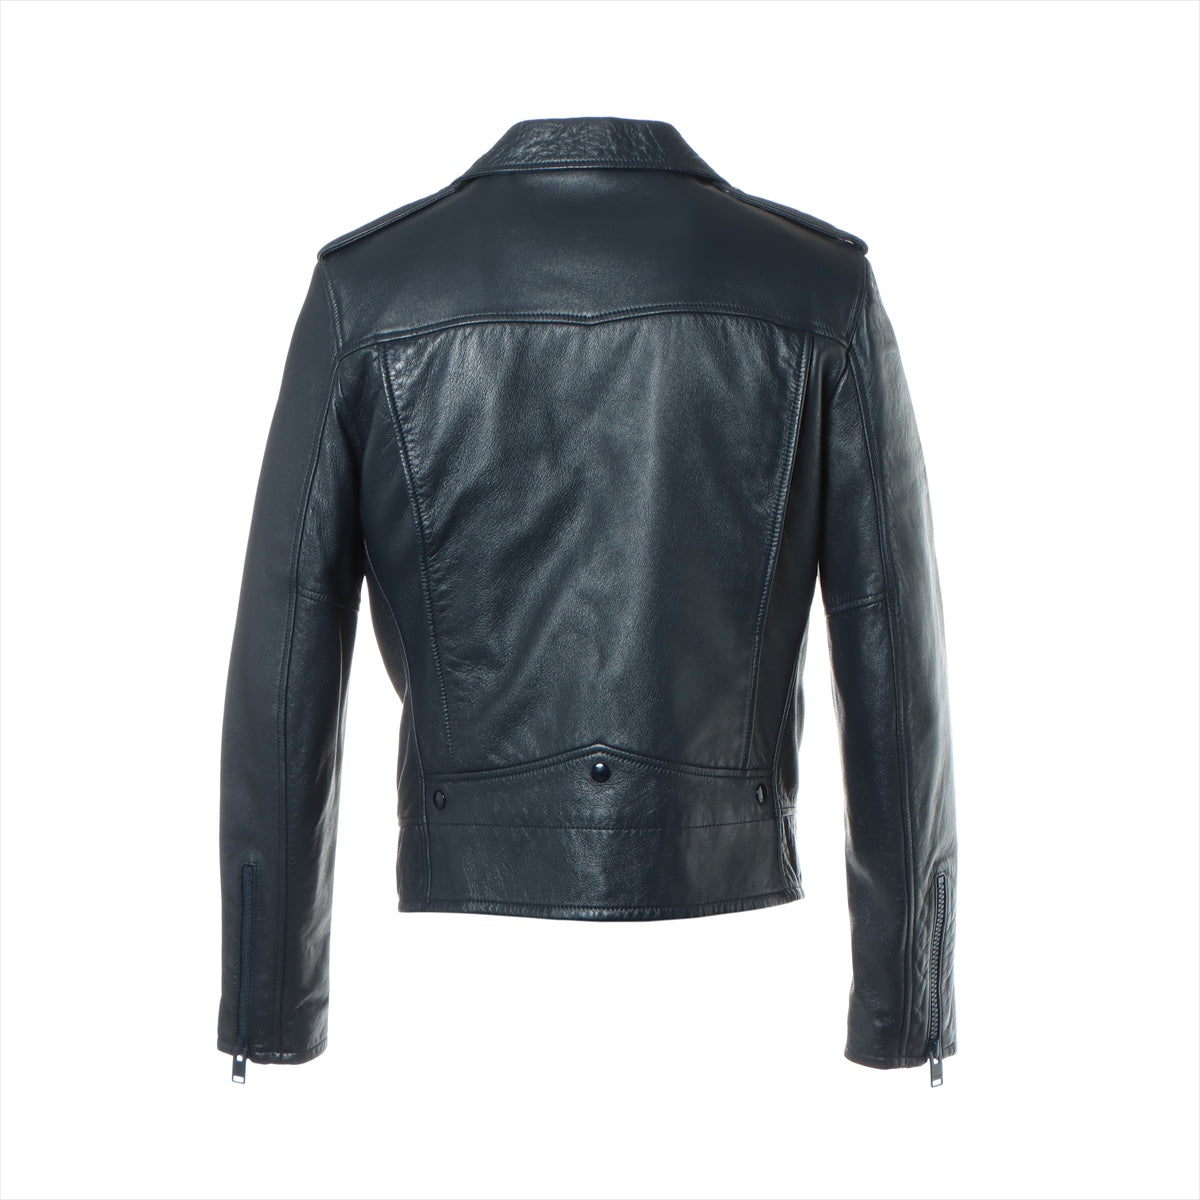 Saint Laurent Paris 16 years Ram Leather jacket 50 Men's Blue  442929 classic motorcycles